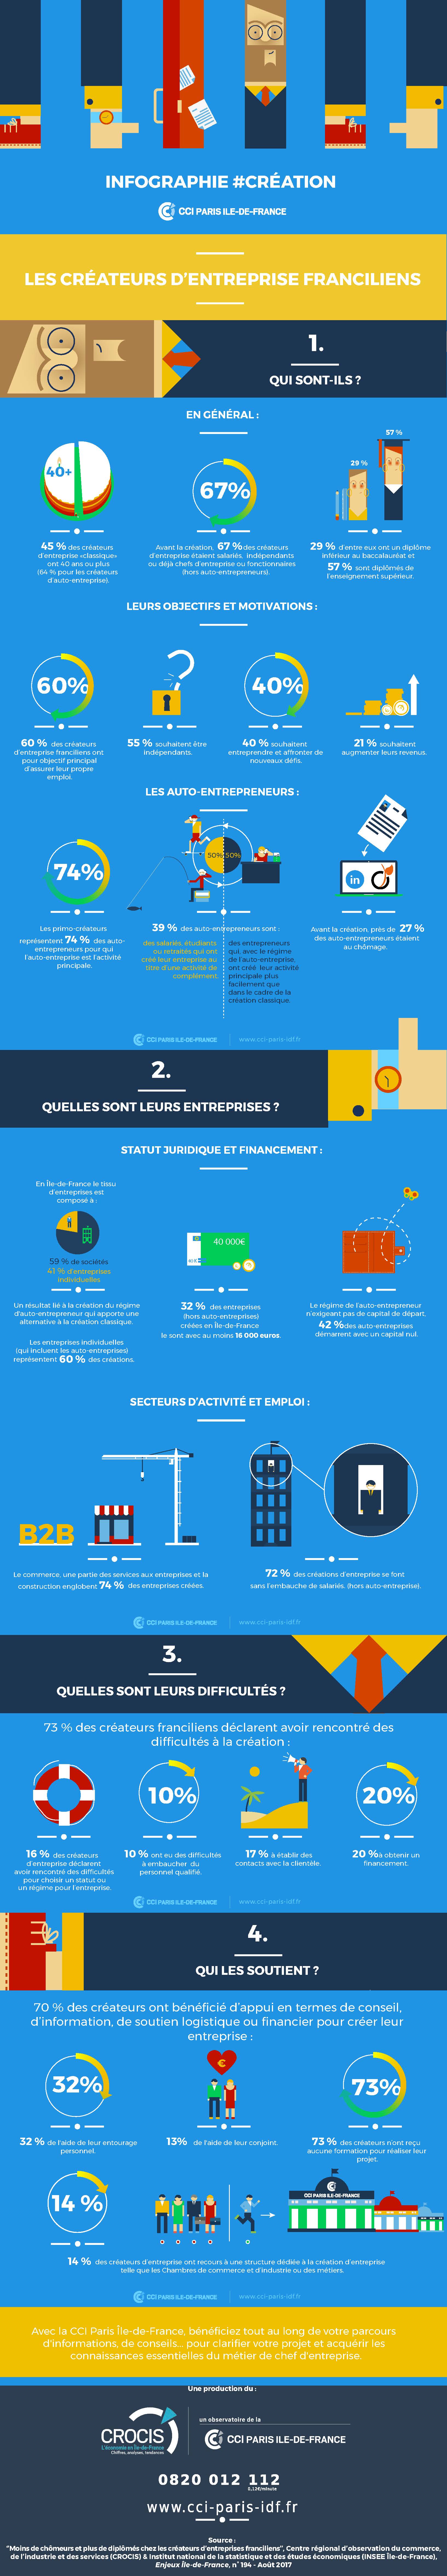 Infographie portrait des créateurs d'entreprise franciliens